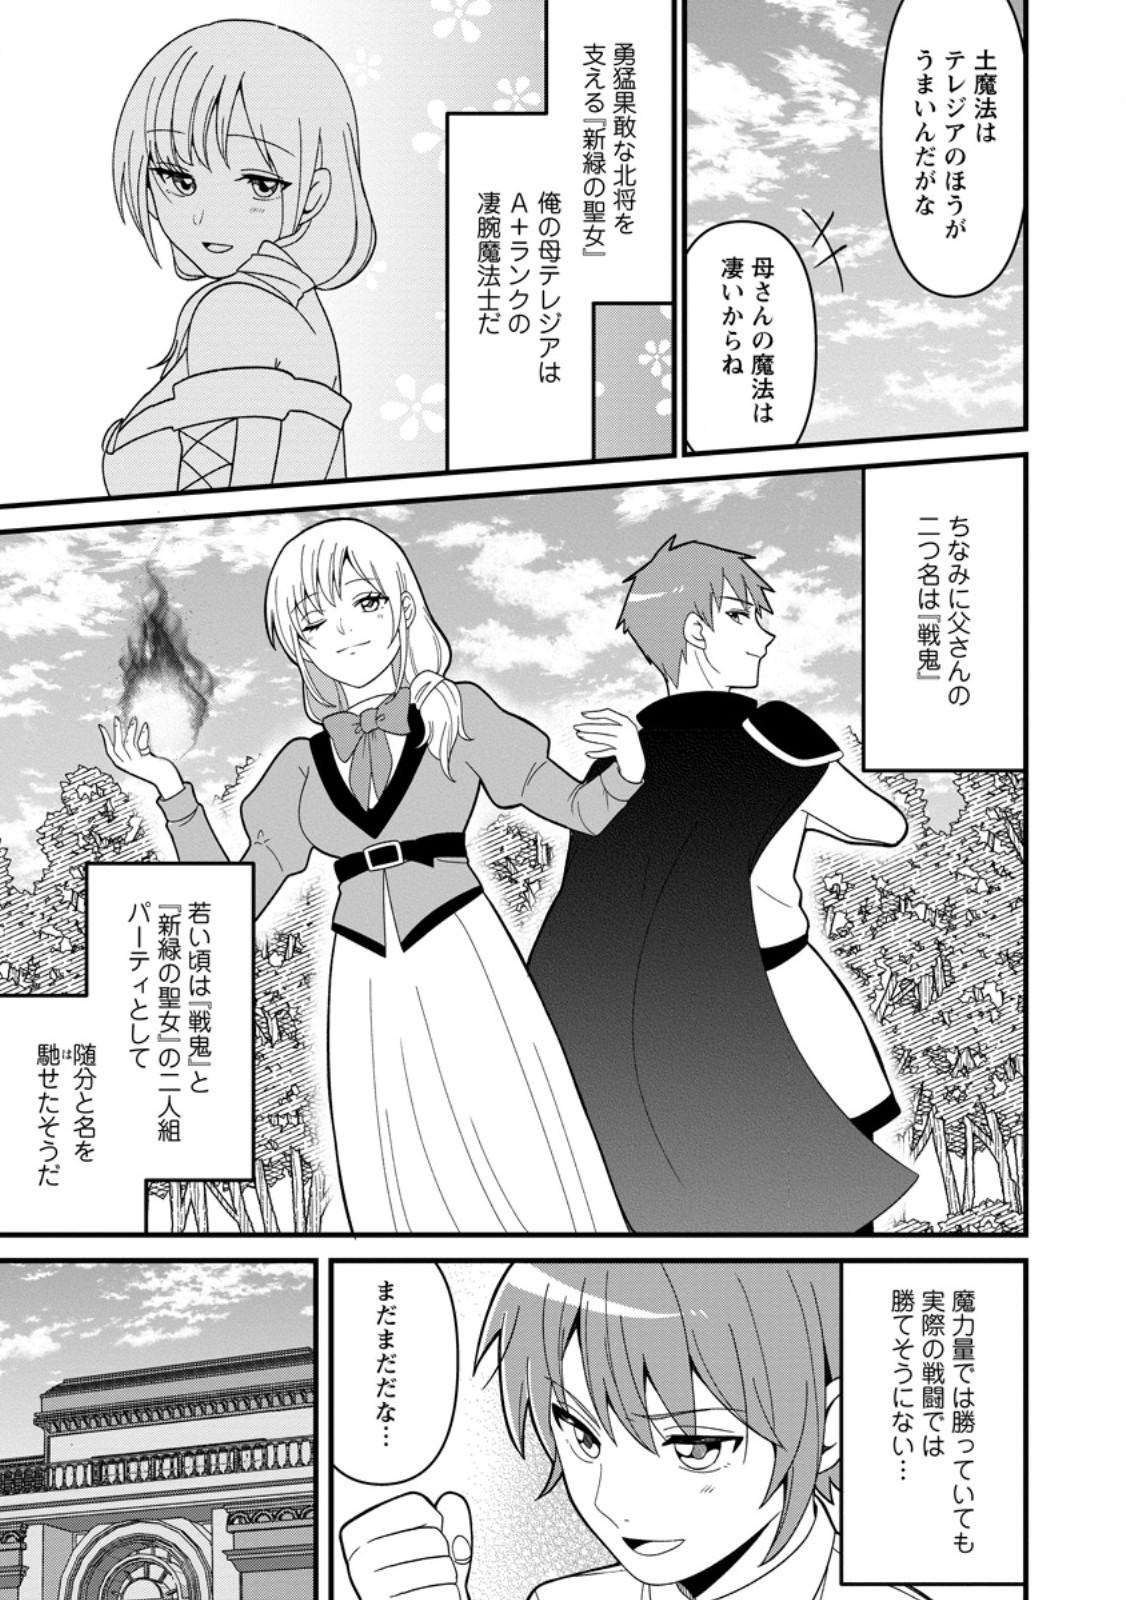 Doryoku wa Ore wo Uragirenai - Chapter 2 - Page 5